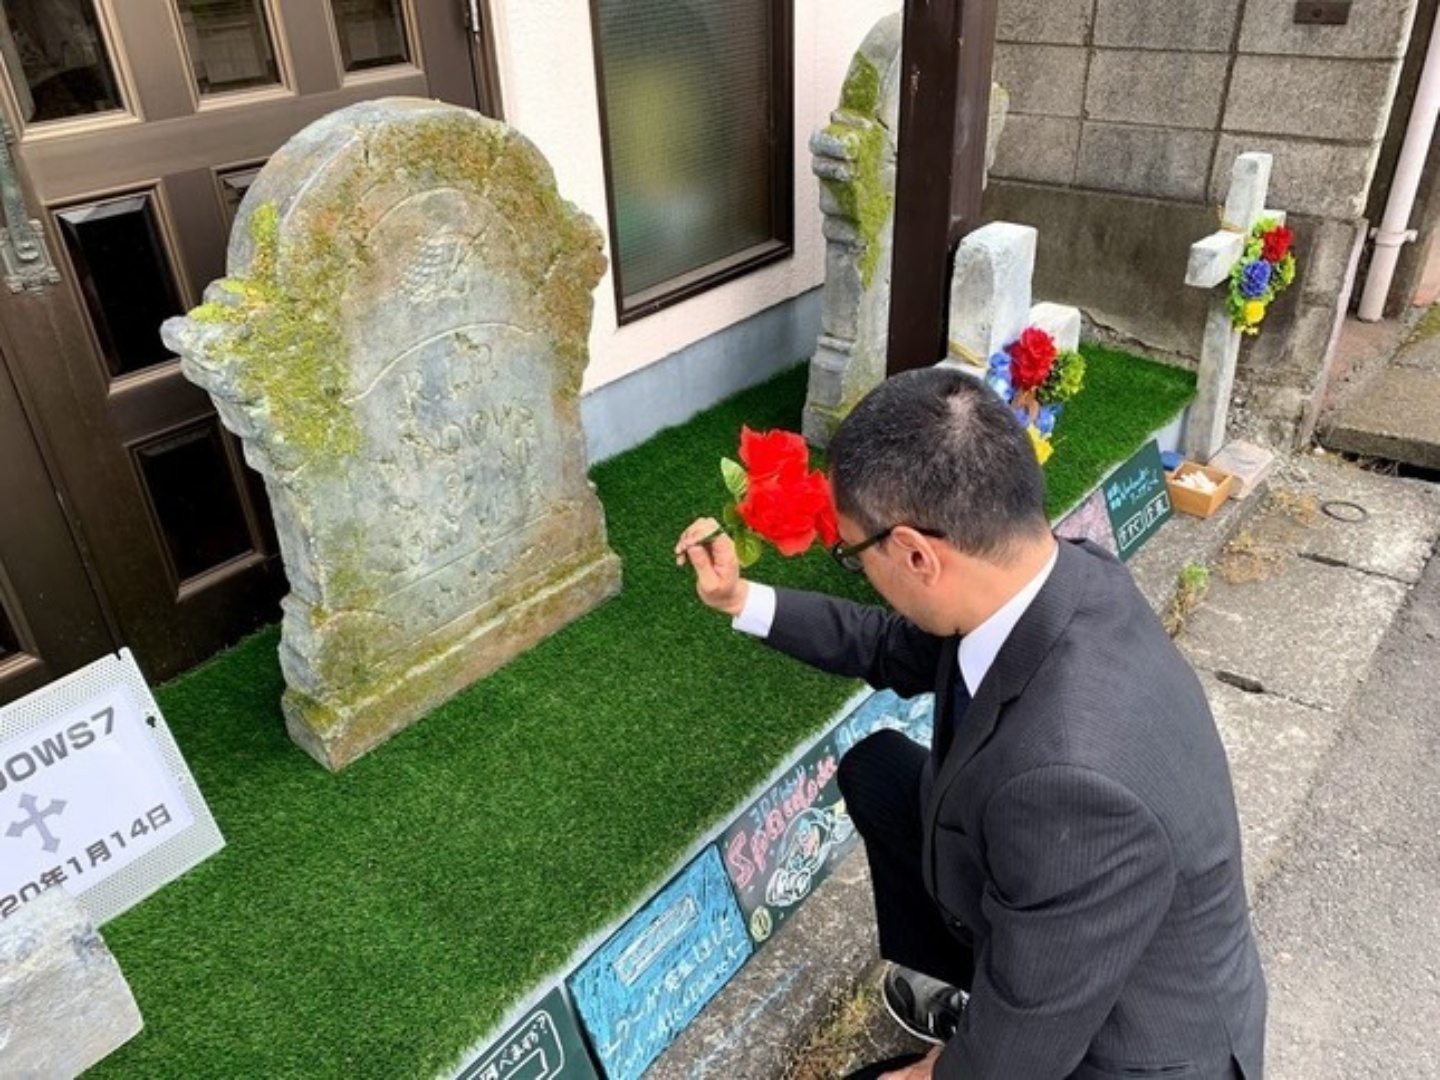 日本街頭出現Windows系統墓園，看來Windows 7 馬上也要入土安葬了！